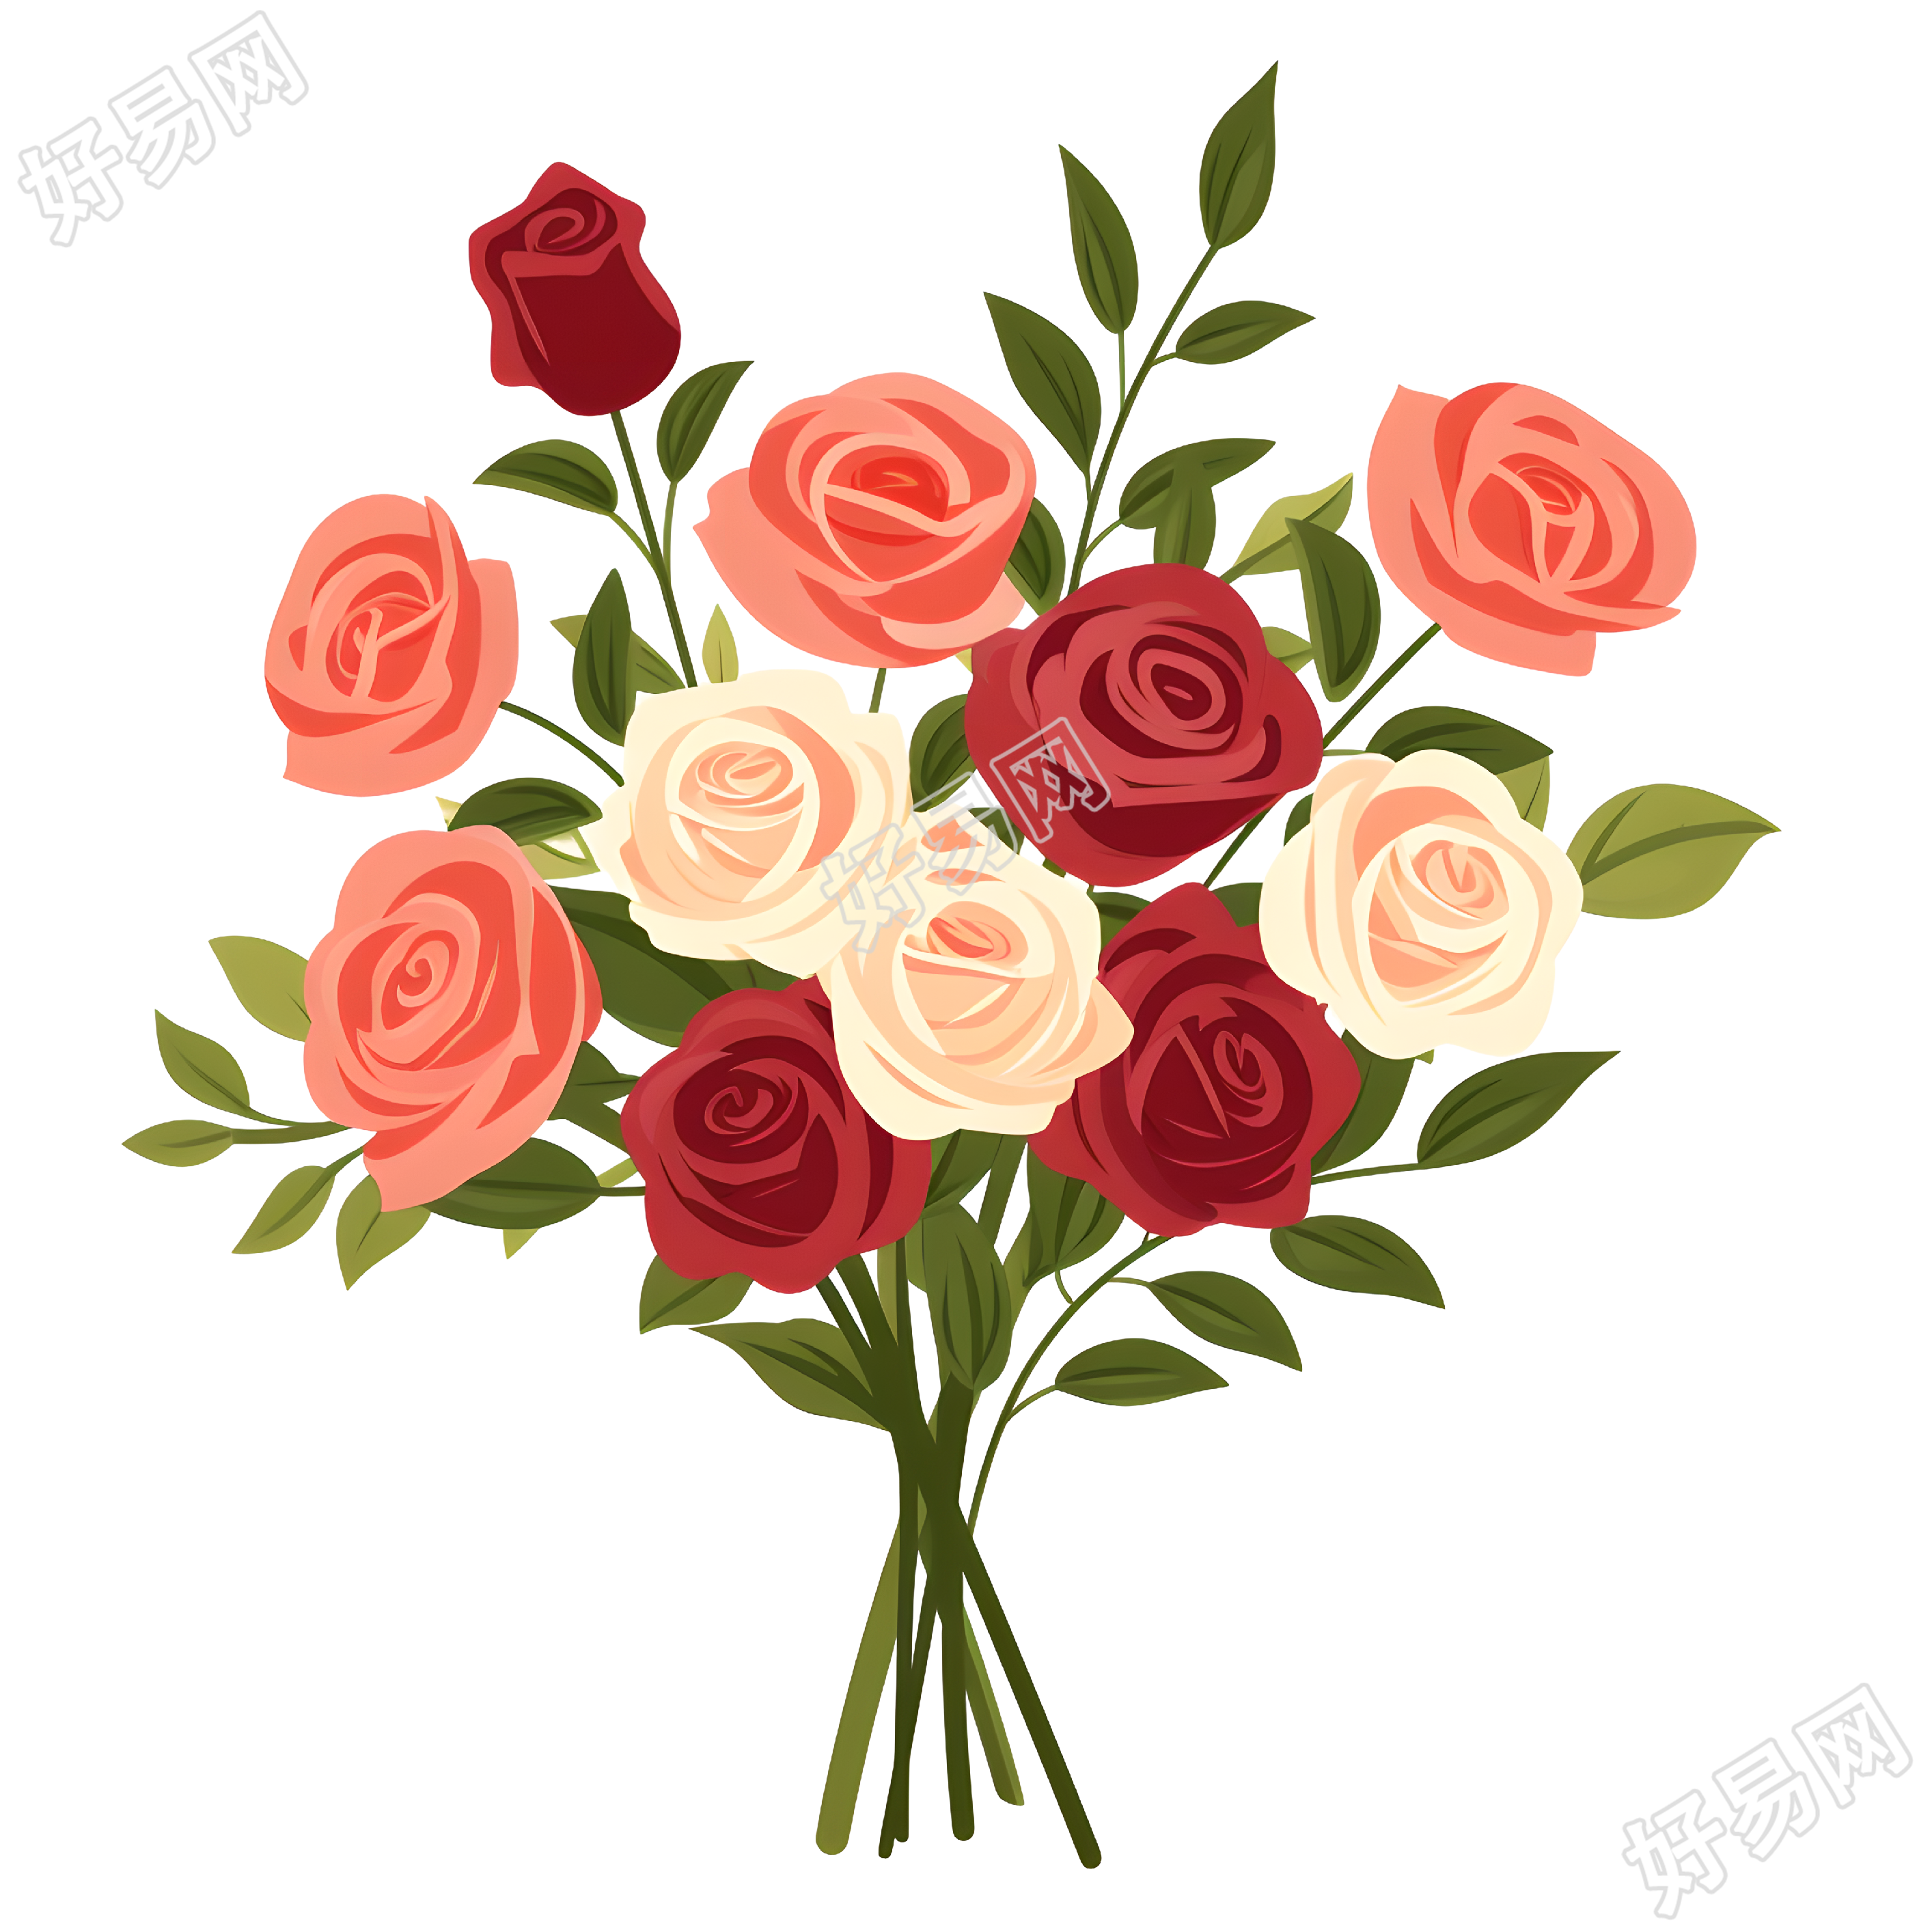 玫瑰花束可商用图形素材